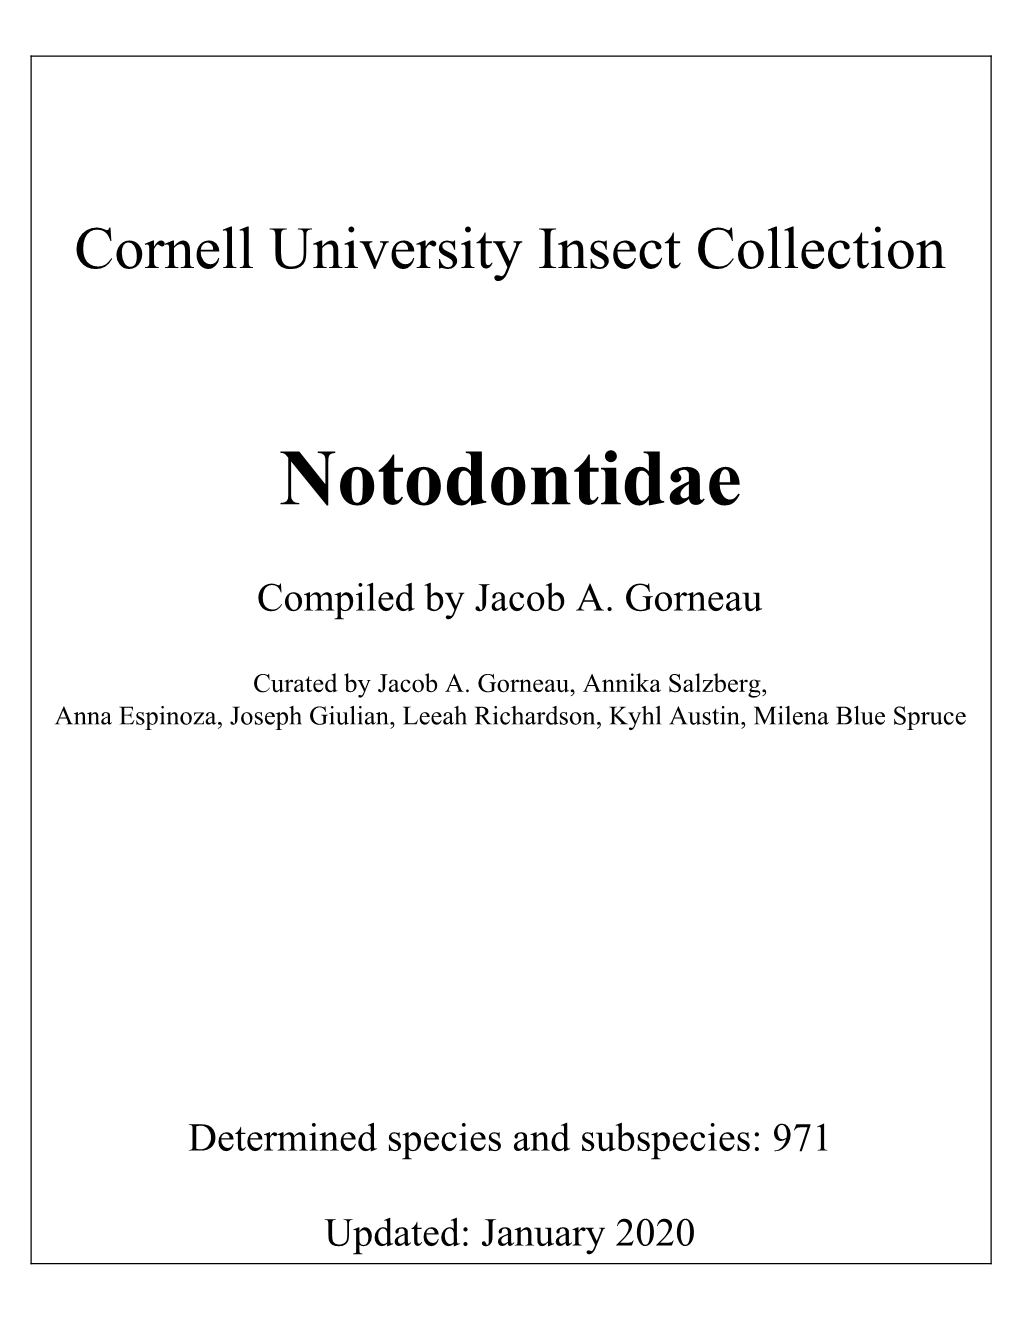 Notodontidae & Oenosandridae